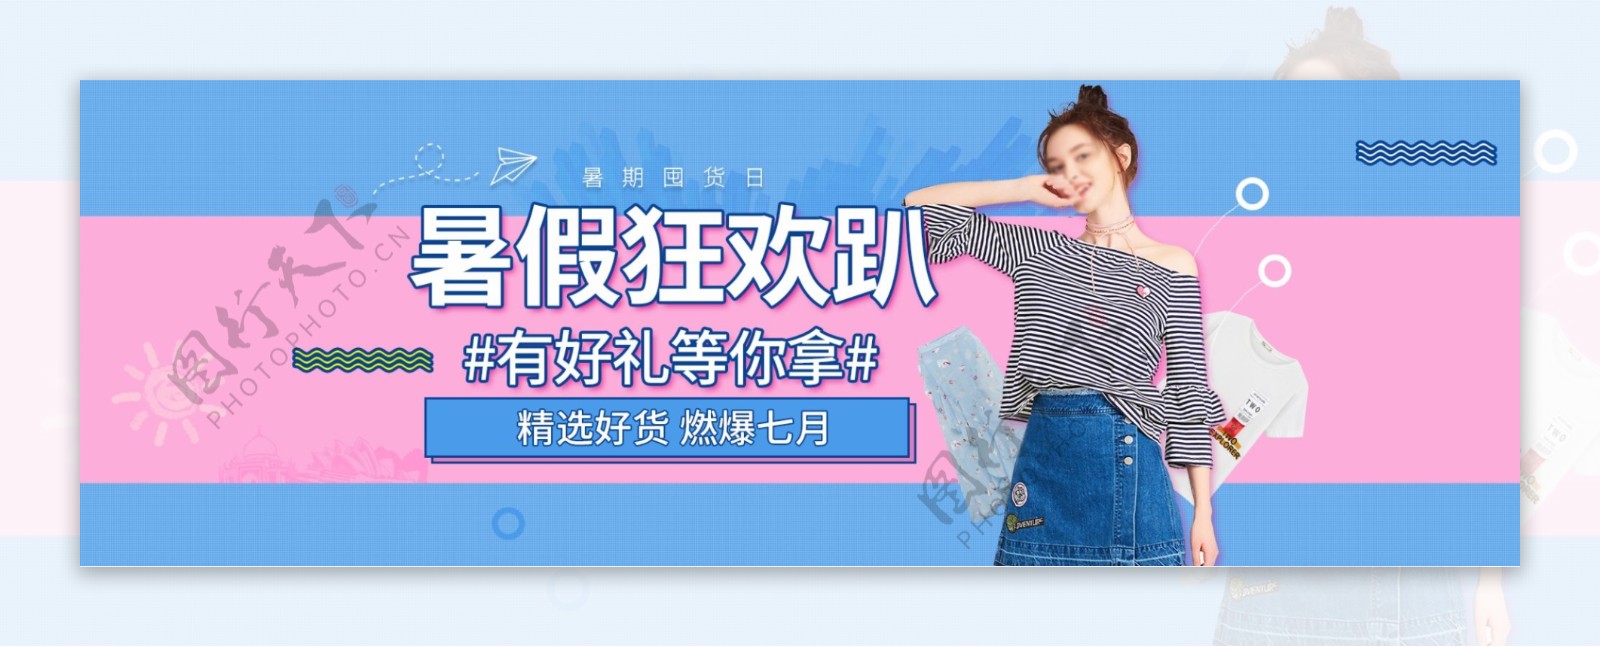 电商淘宝天猫女装暑期促销海报banner